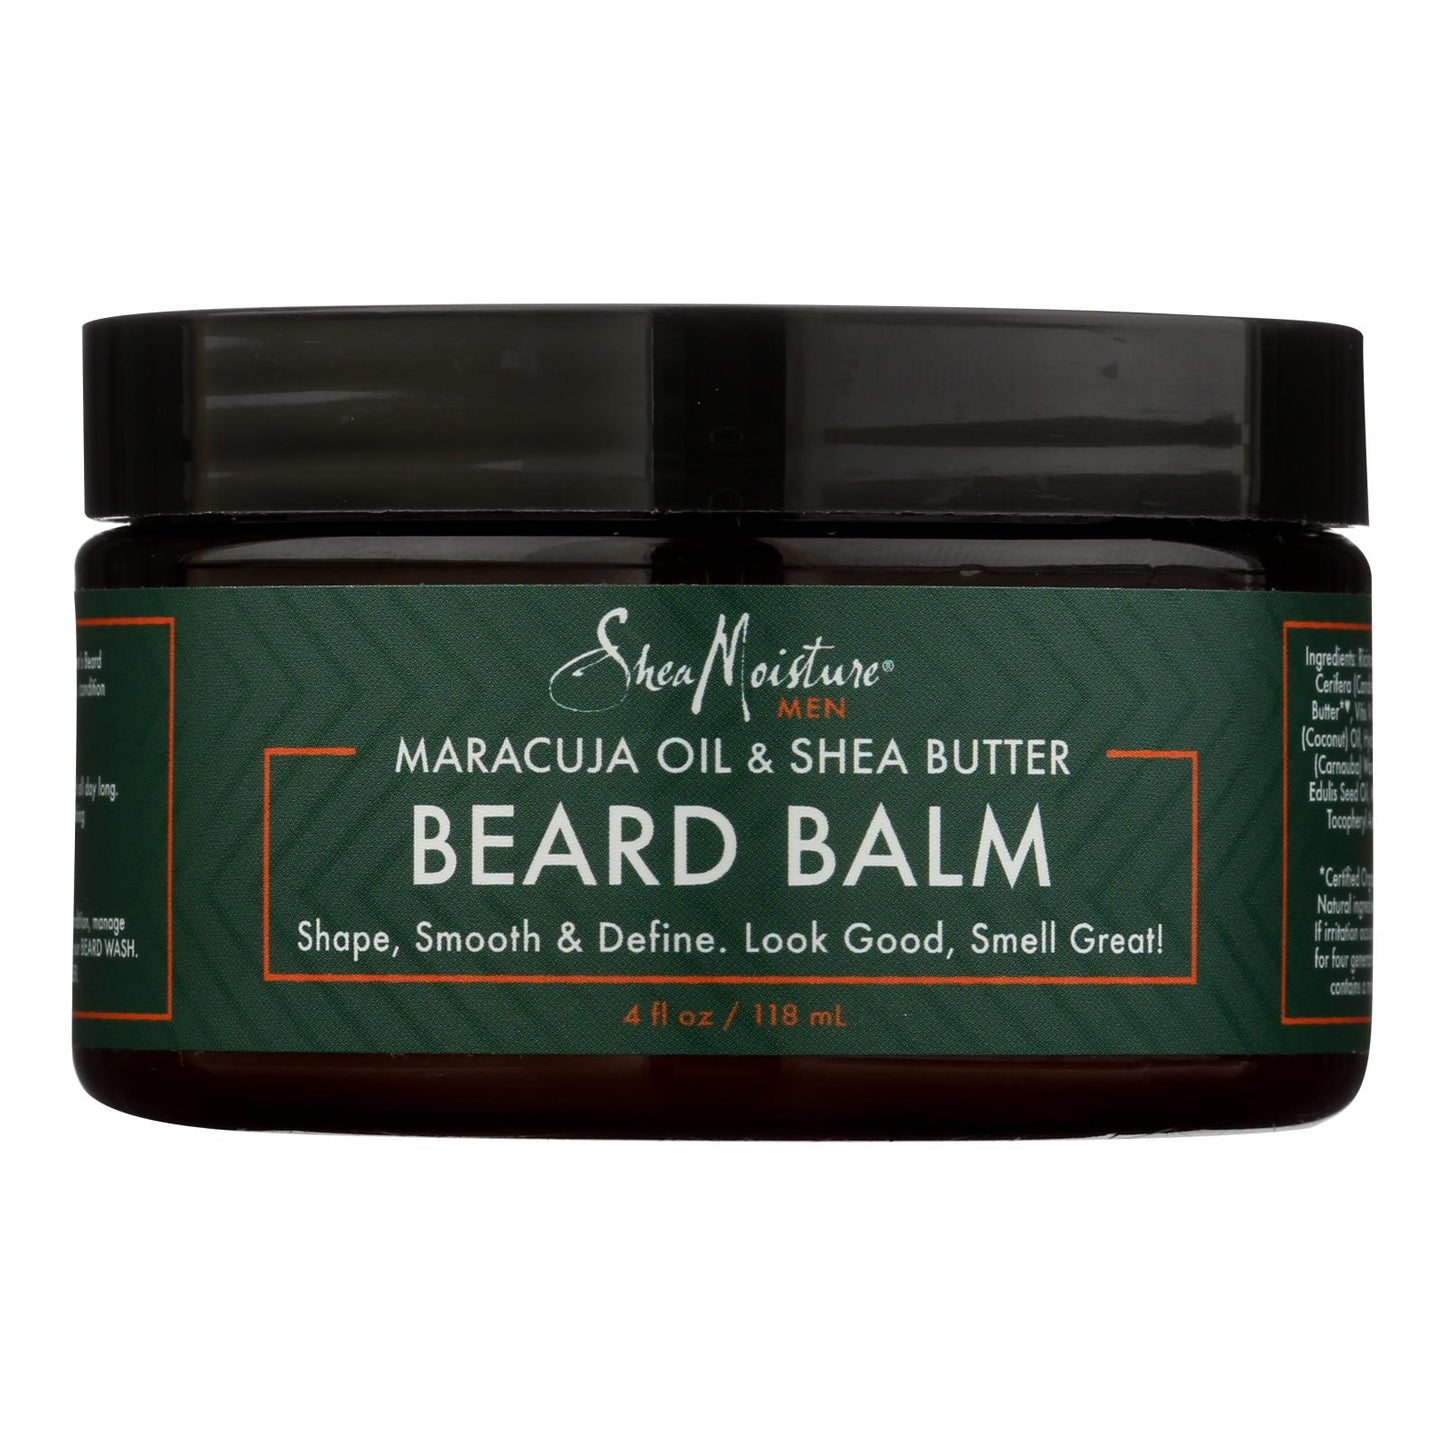 
                  
                    Shea Moisture Maracuja Oil & Shea Butter Beard Balm - 4 fl oz.
                  
                